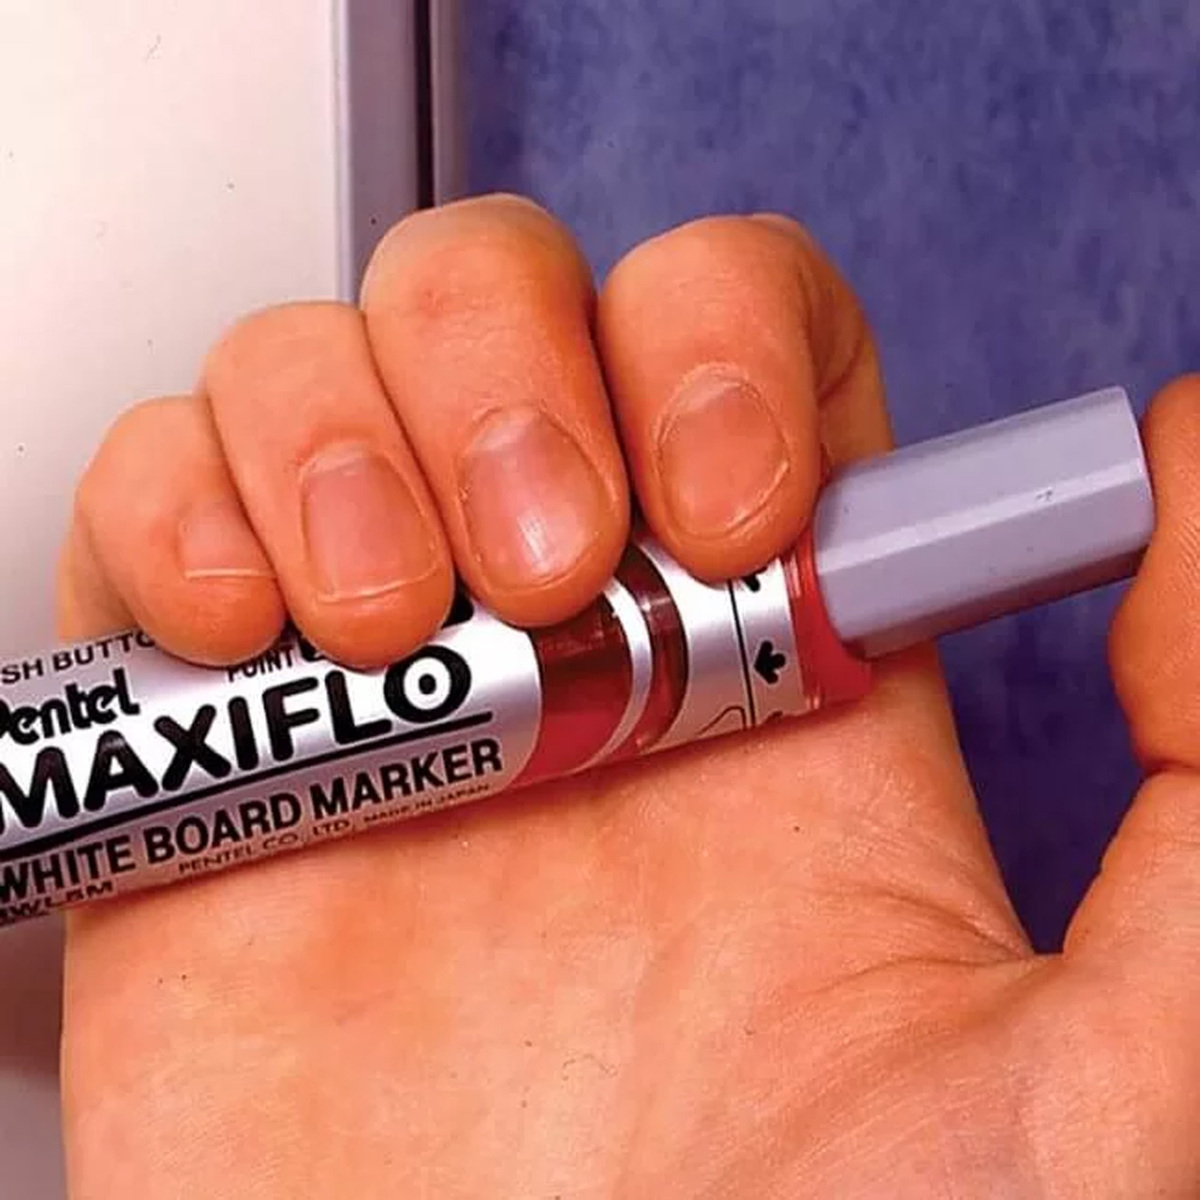 بنتل ماكسيفلو قلم تحديد جاف برأس مشطوف متوسط ​​الحجم 8 قطع، MWL608